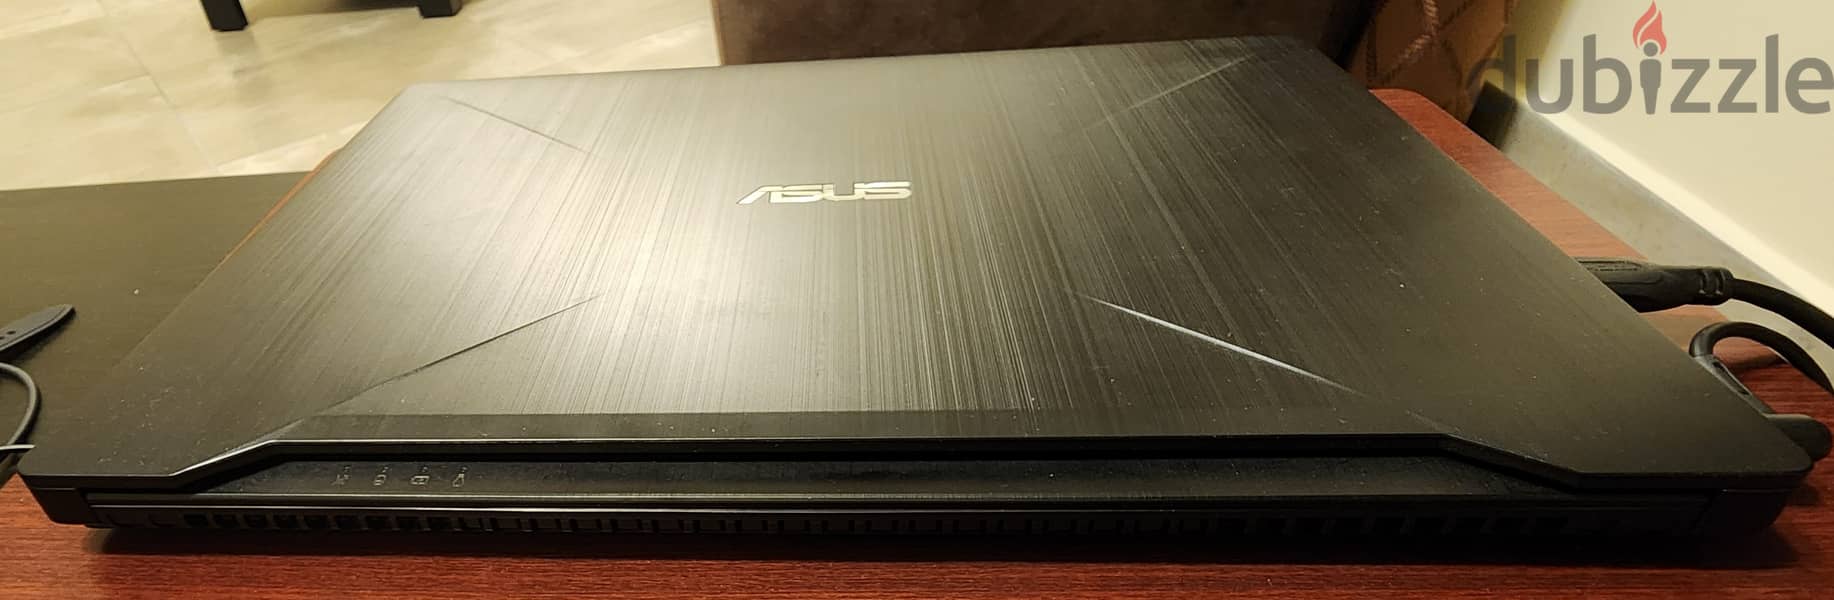 ASUS Gaming Laptop (FX503VD) 4